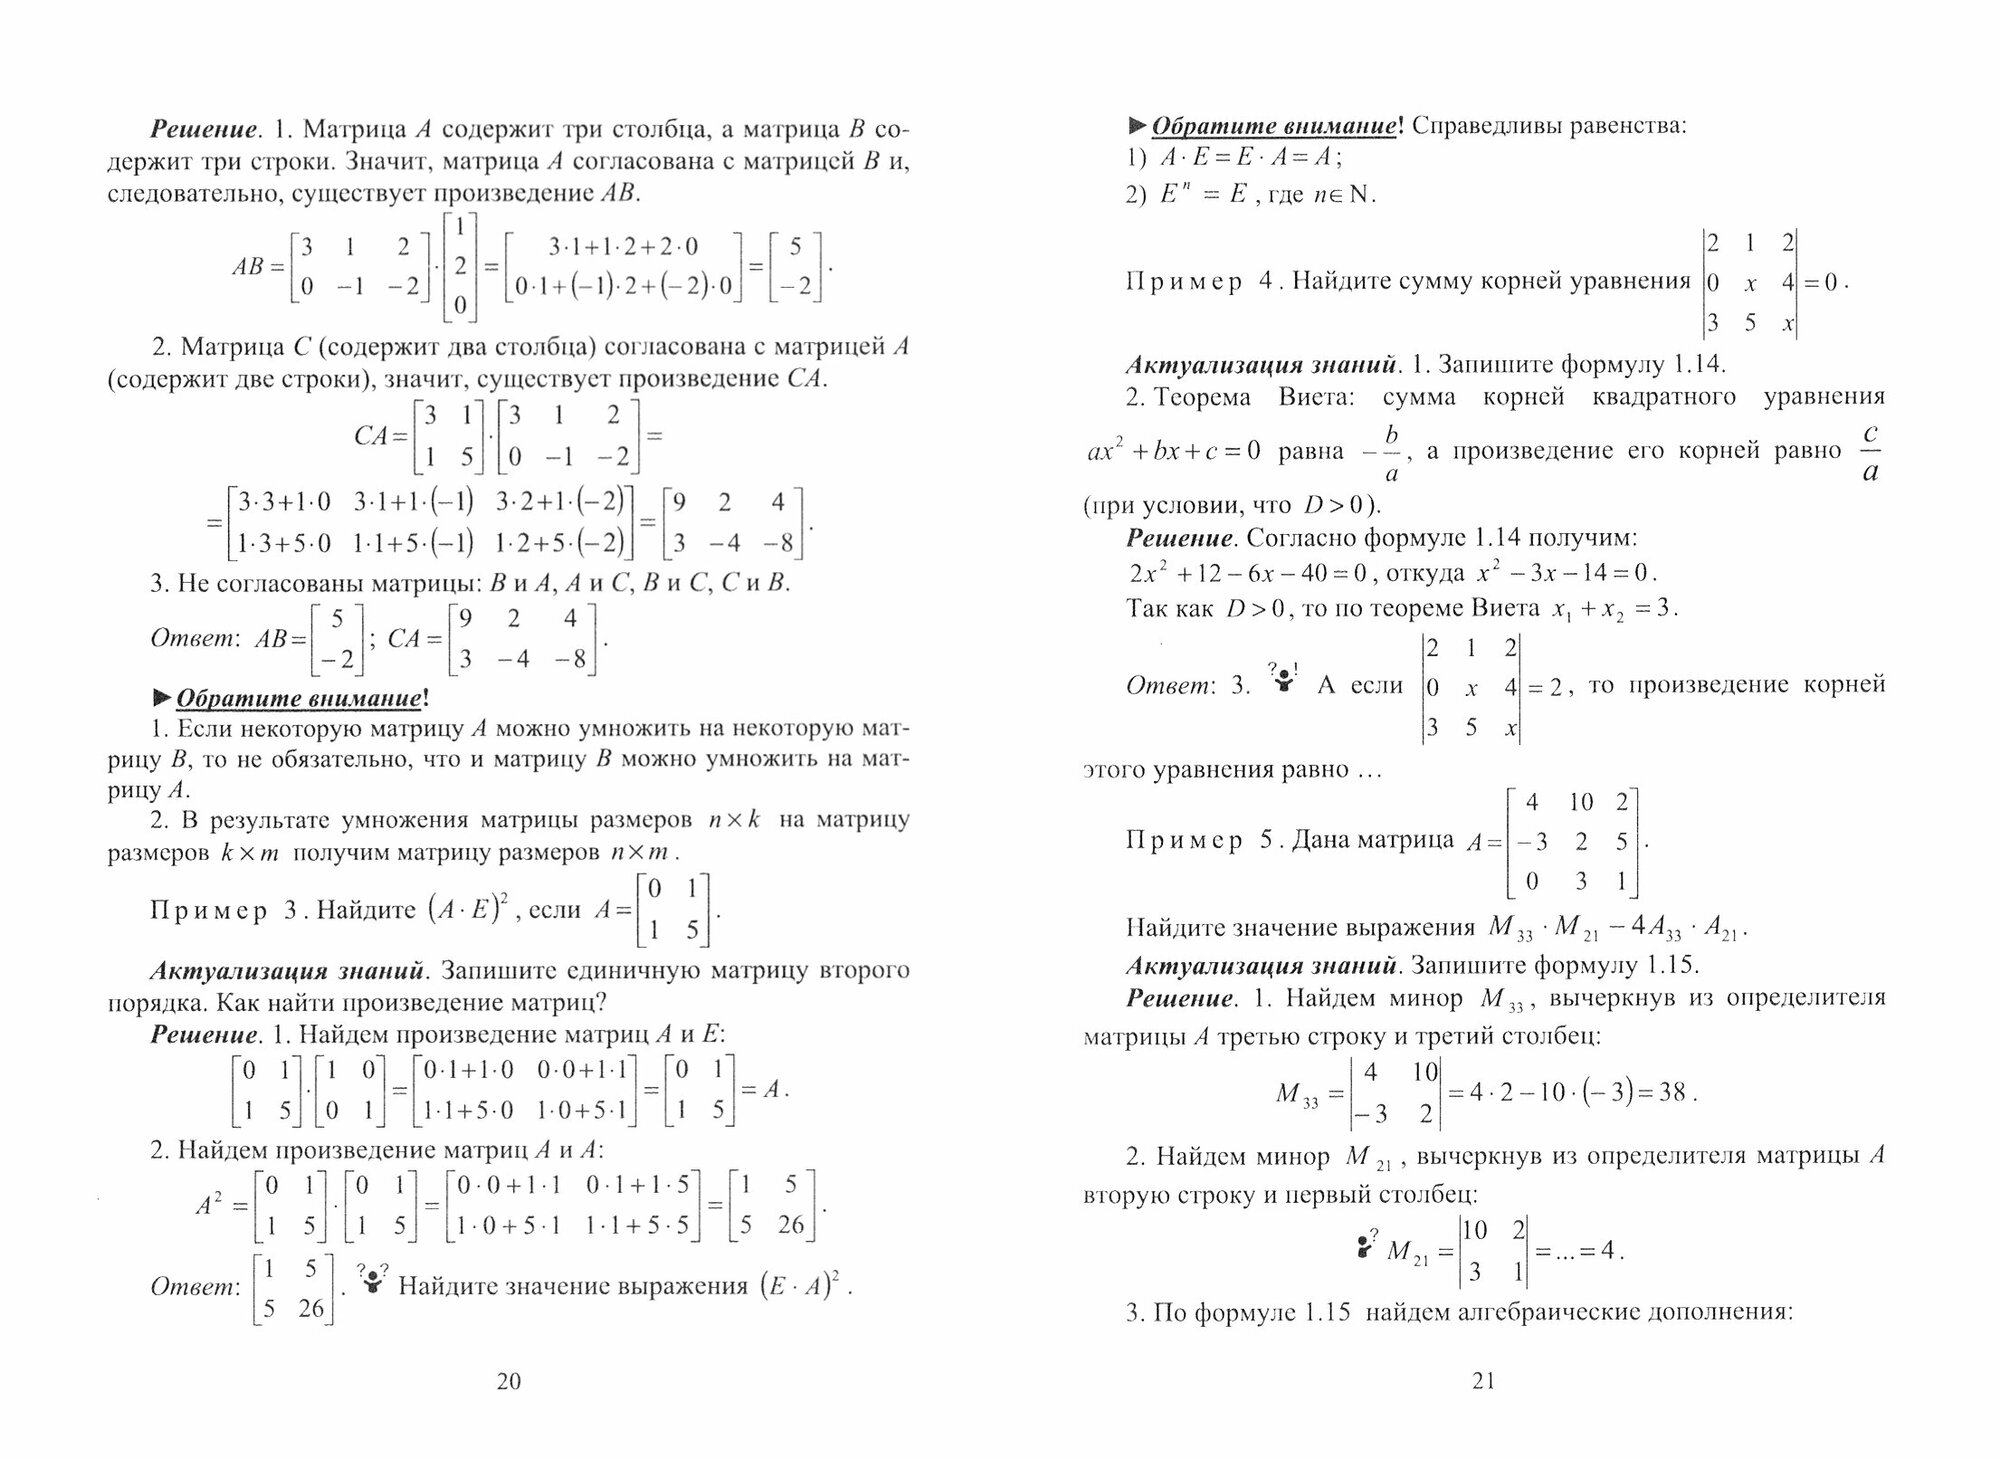 Линейная алгебра и аналитическая геометрия. Интерактивный курс - фото №7